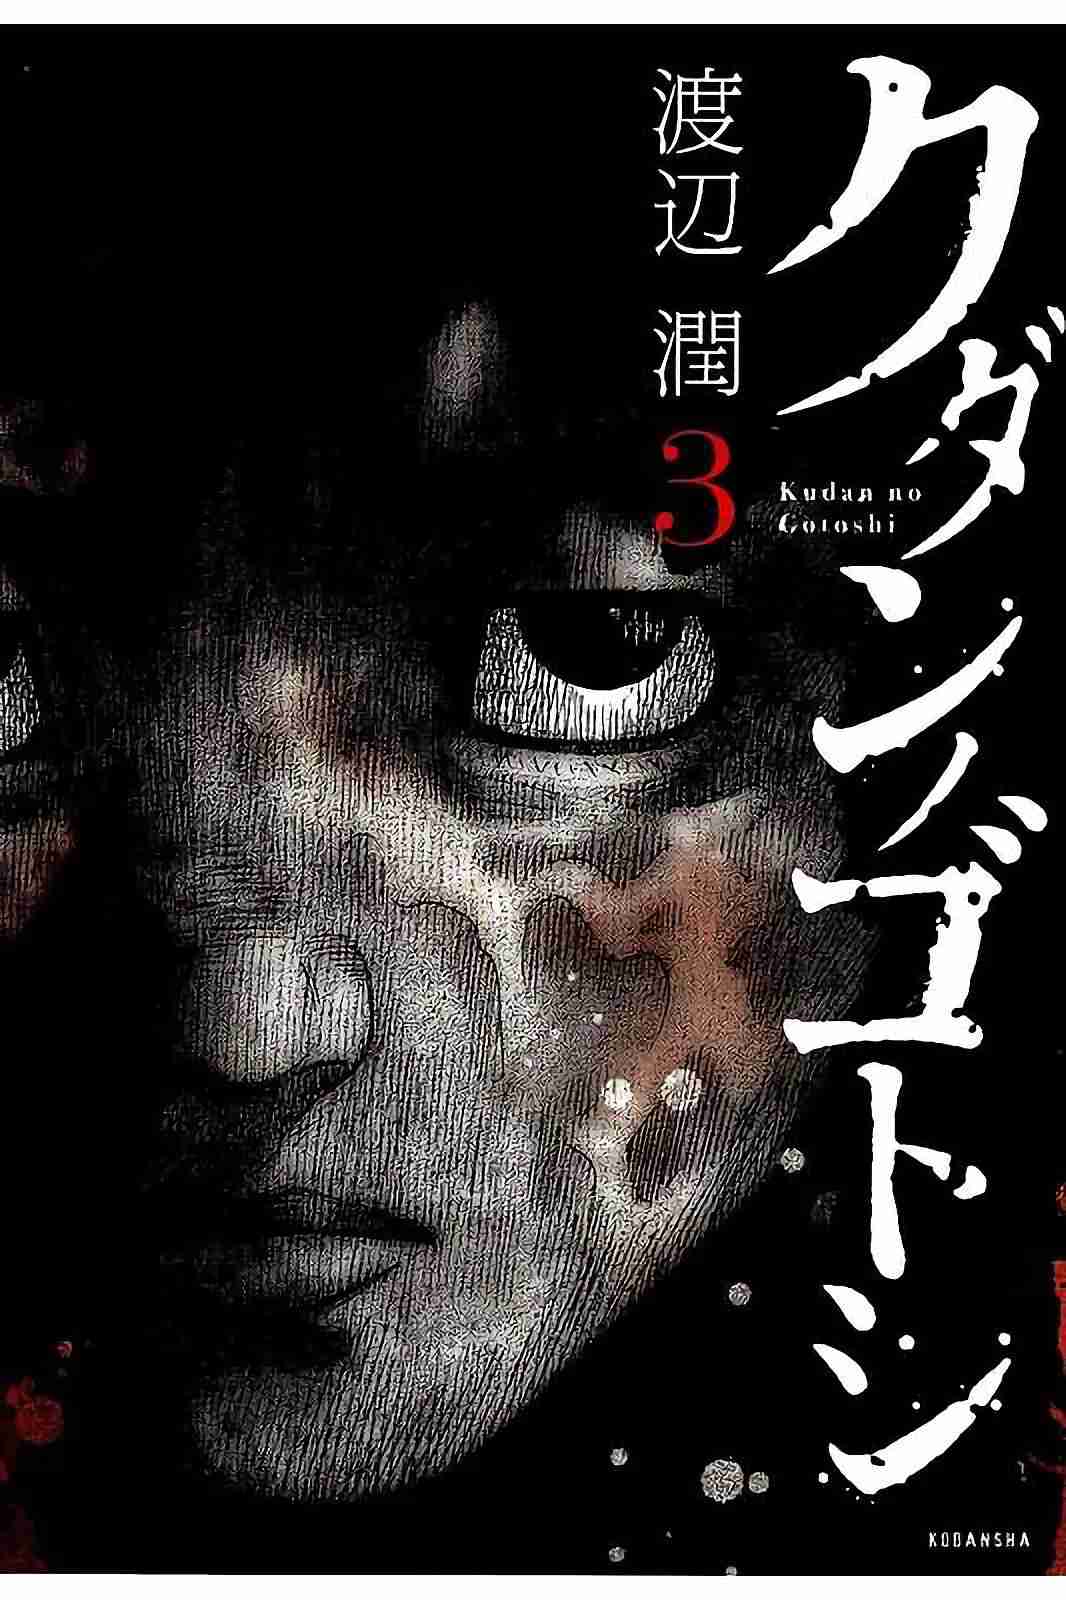 Kudan no Gotoshi Vol. 3 Ch. 21 Shinji Fujisawa < Part 6 > Youta Onodera < Part 1 >